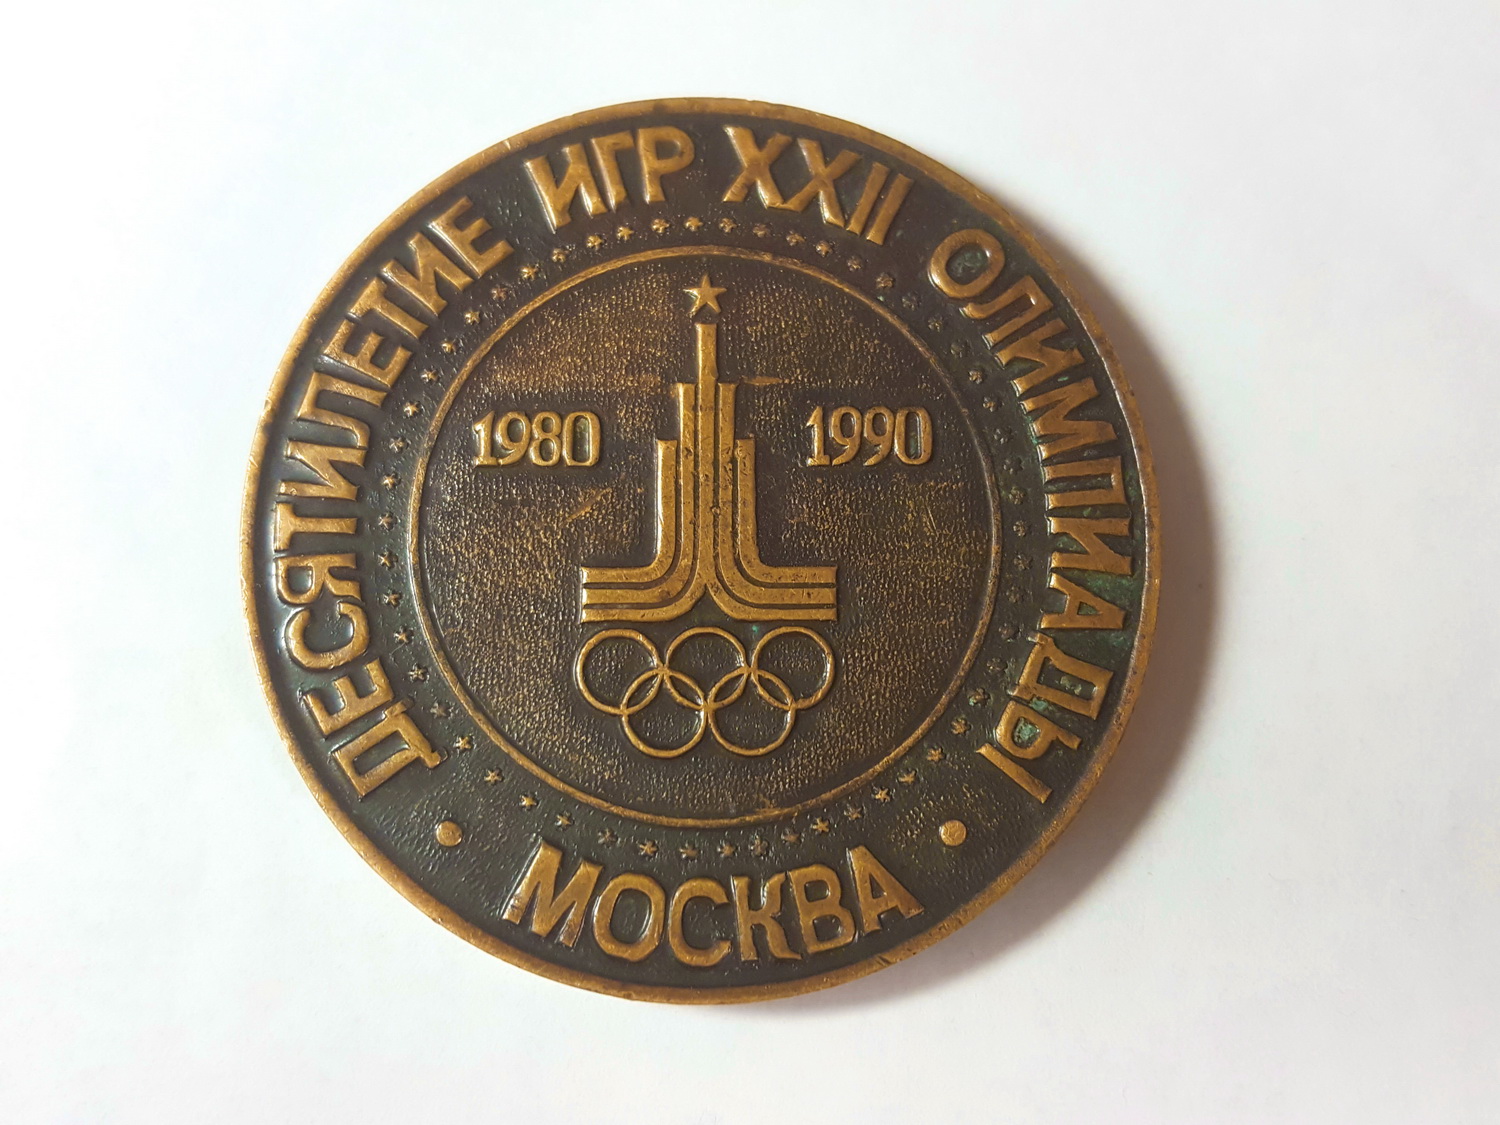 Медаль 10 лет олимпиаде Ф60х5 мм .Продаётся в Ульяновске.Продаются другие объективы.Различные предметы антиквариата и старины.Можно выбрать оригинальный подарок для любого случая.Ульяновск 8 905 349 8210.Ссылку предметов вышлю.